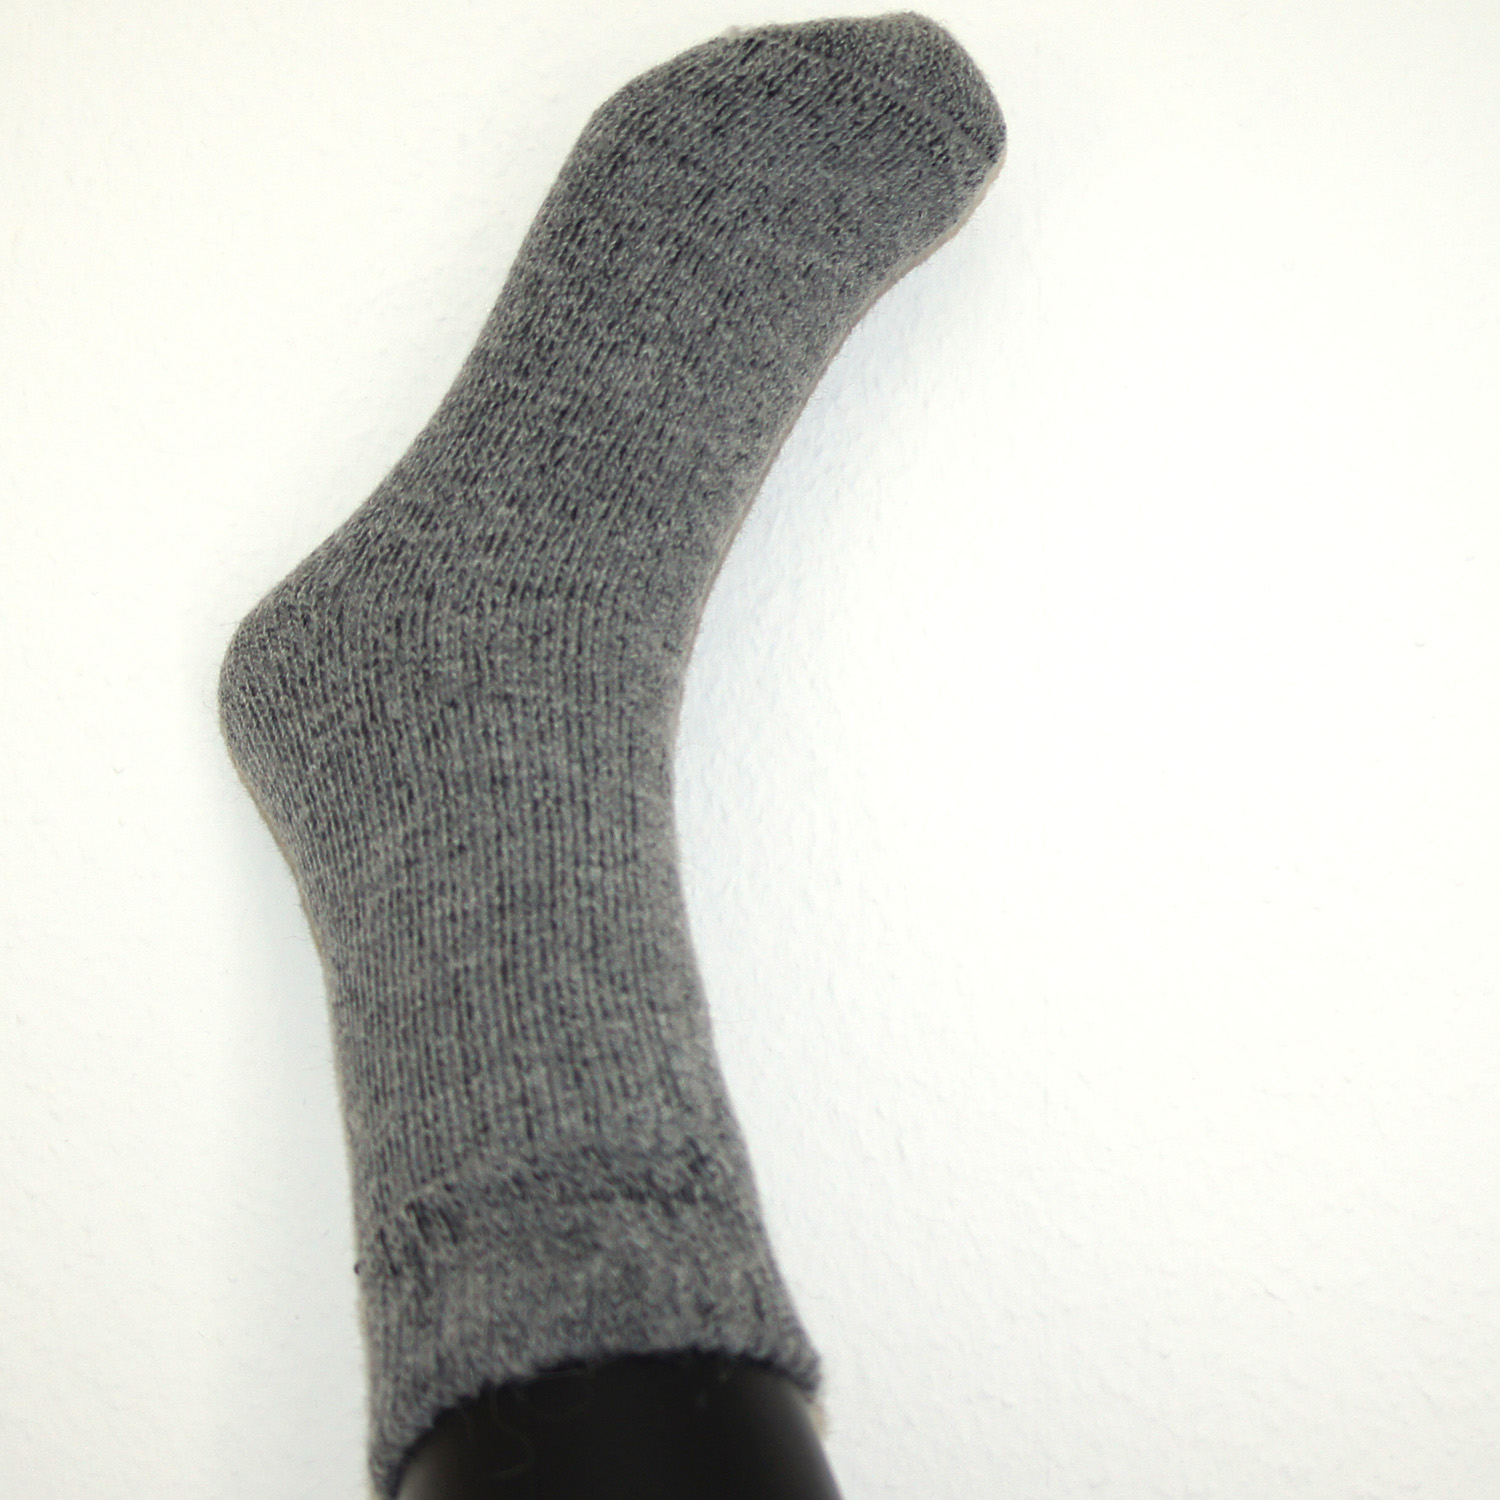 Socken/socks EXTRA, Farbe/colour: grau/gray, Größe/size: S